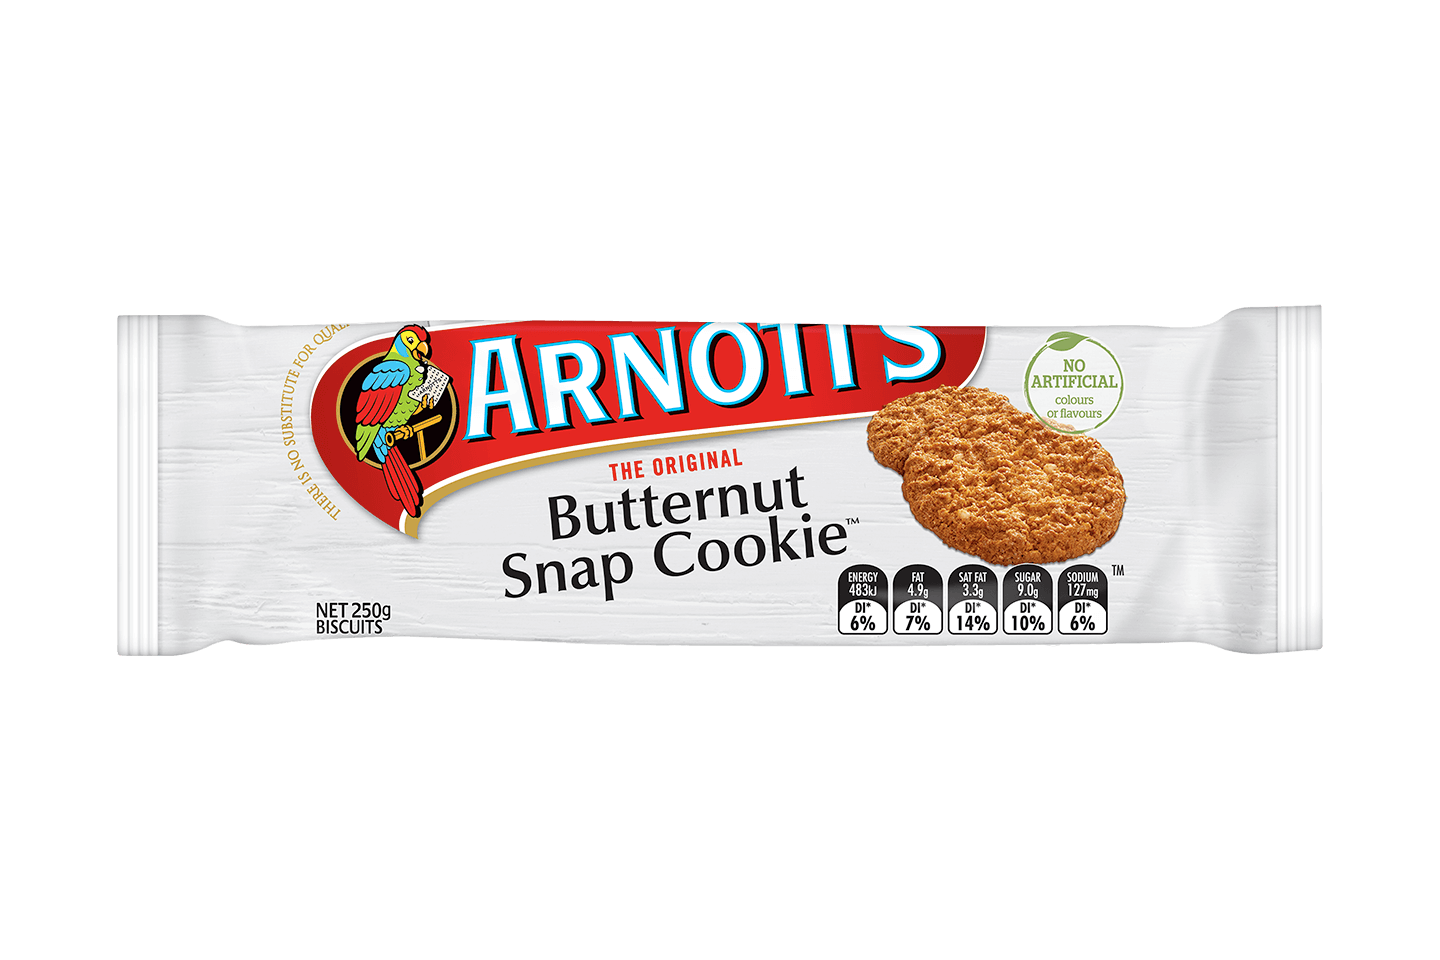 Arnotts Butternut Snap Cookies 250g